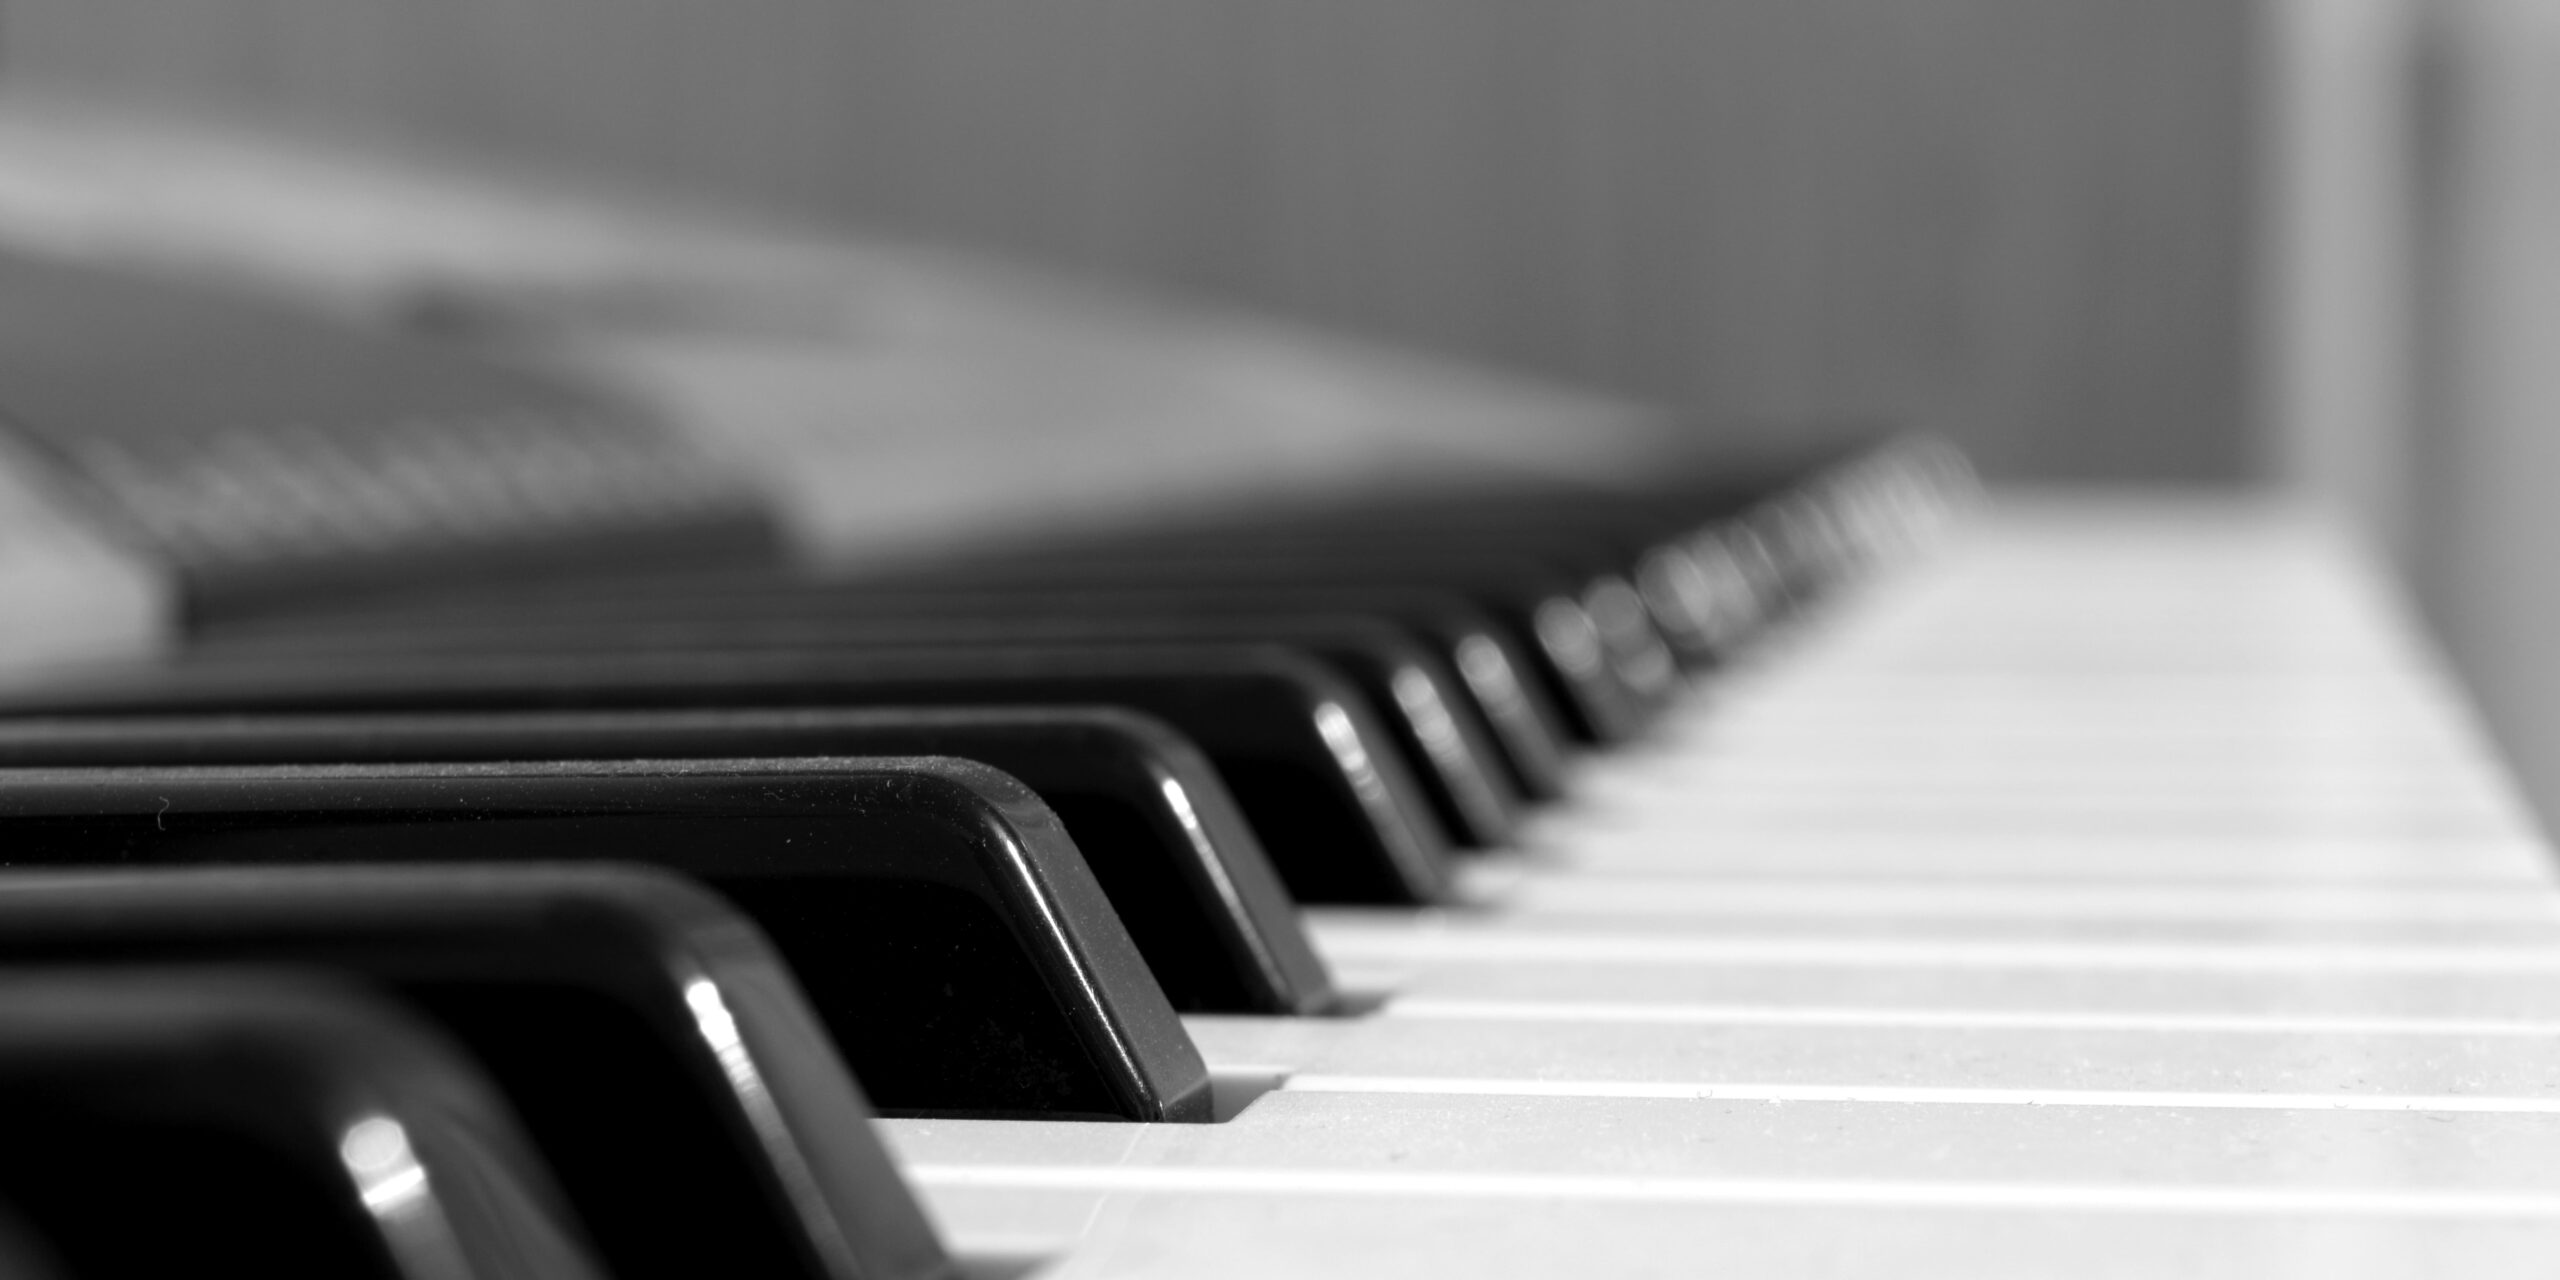 کلاویه پیانو چیست؟